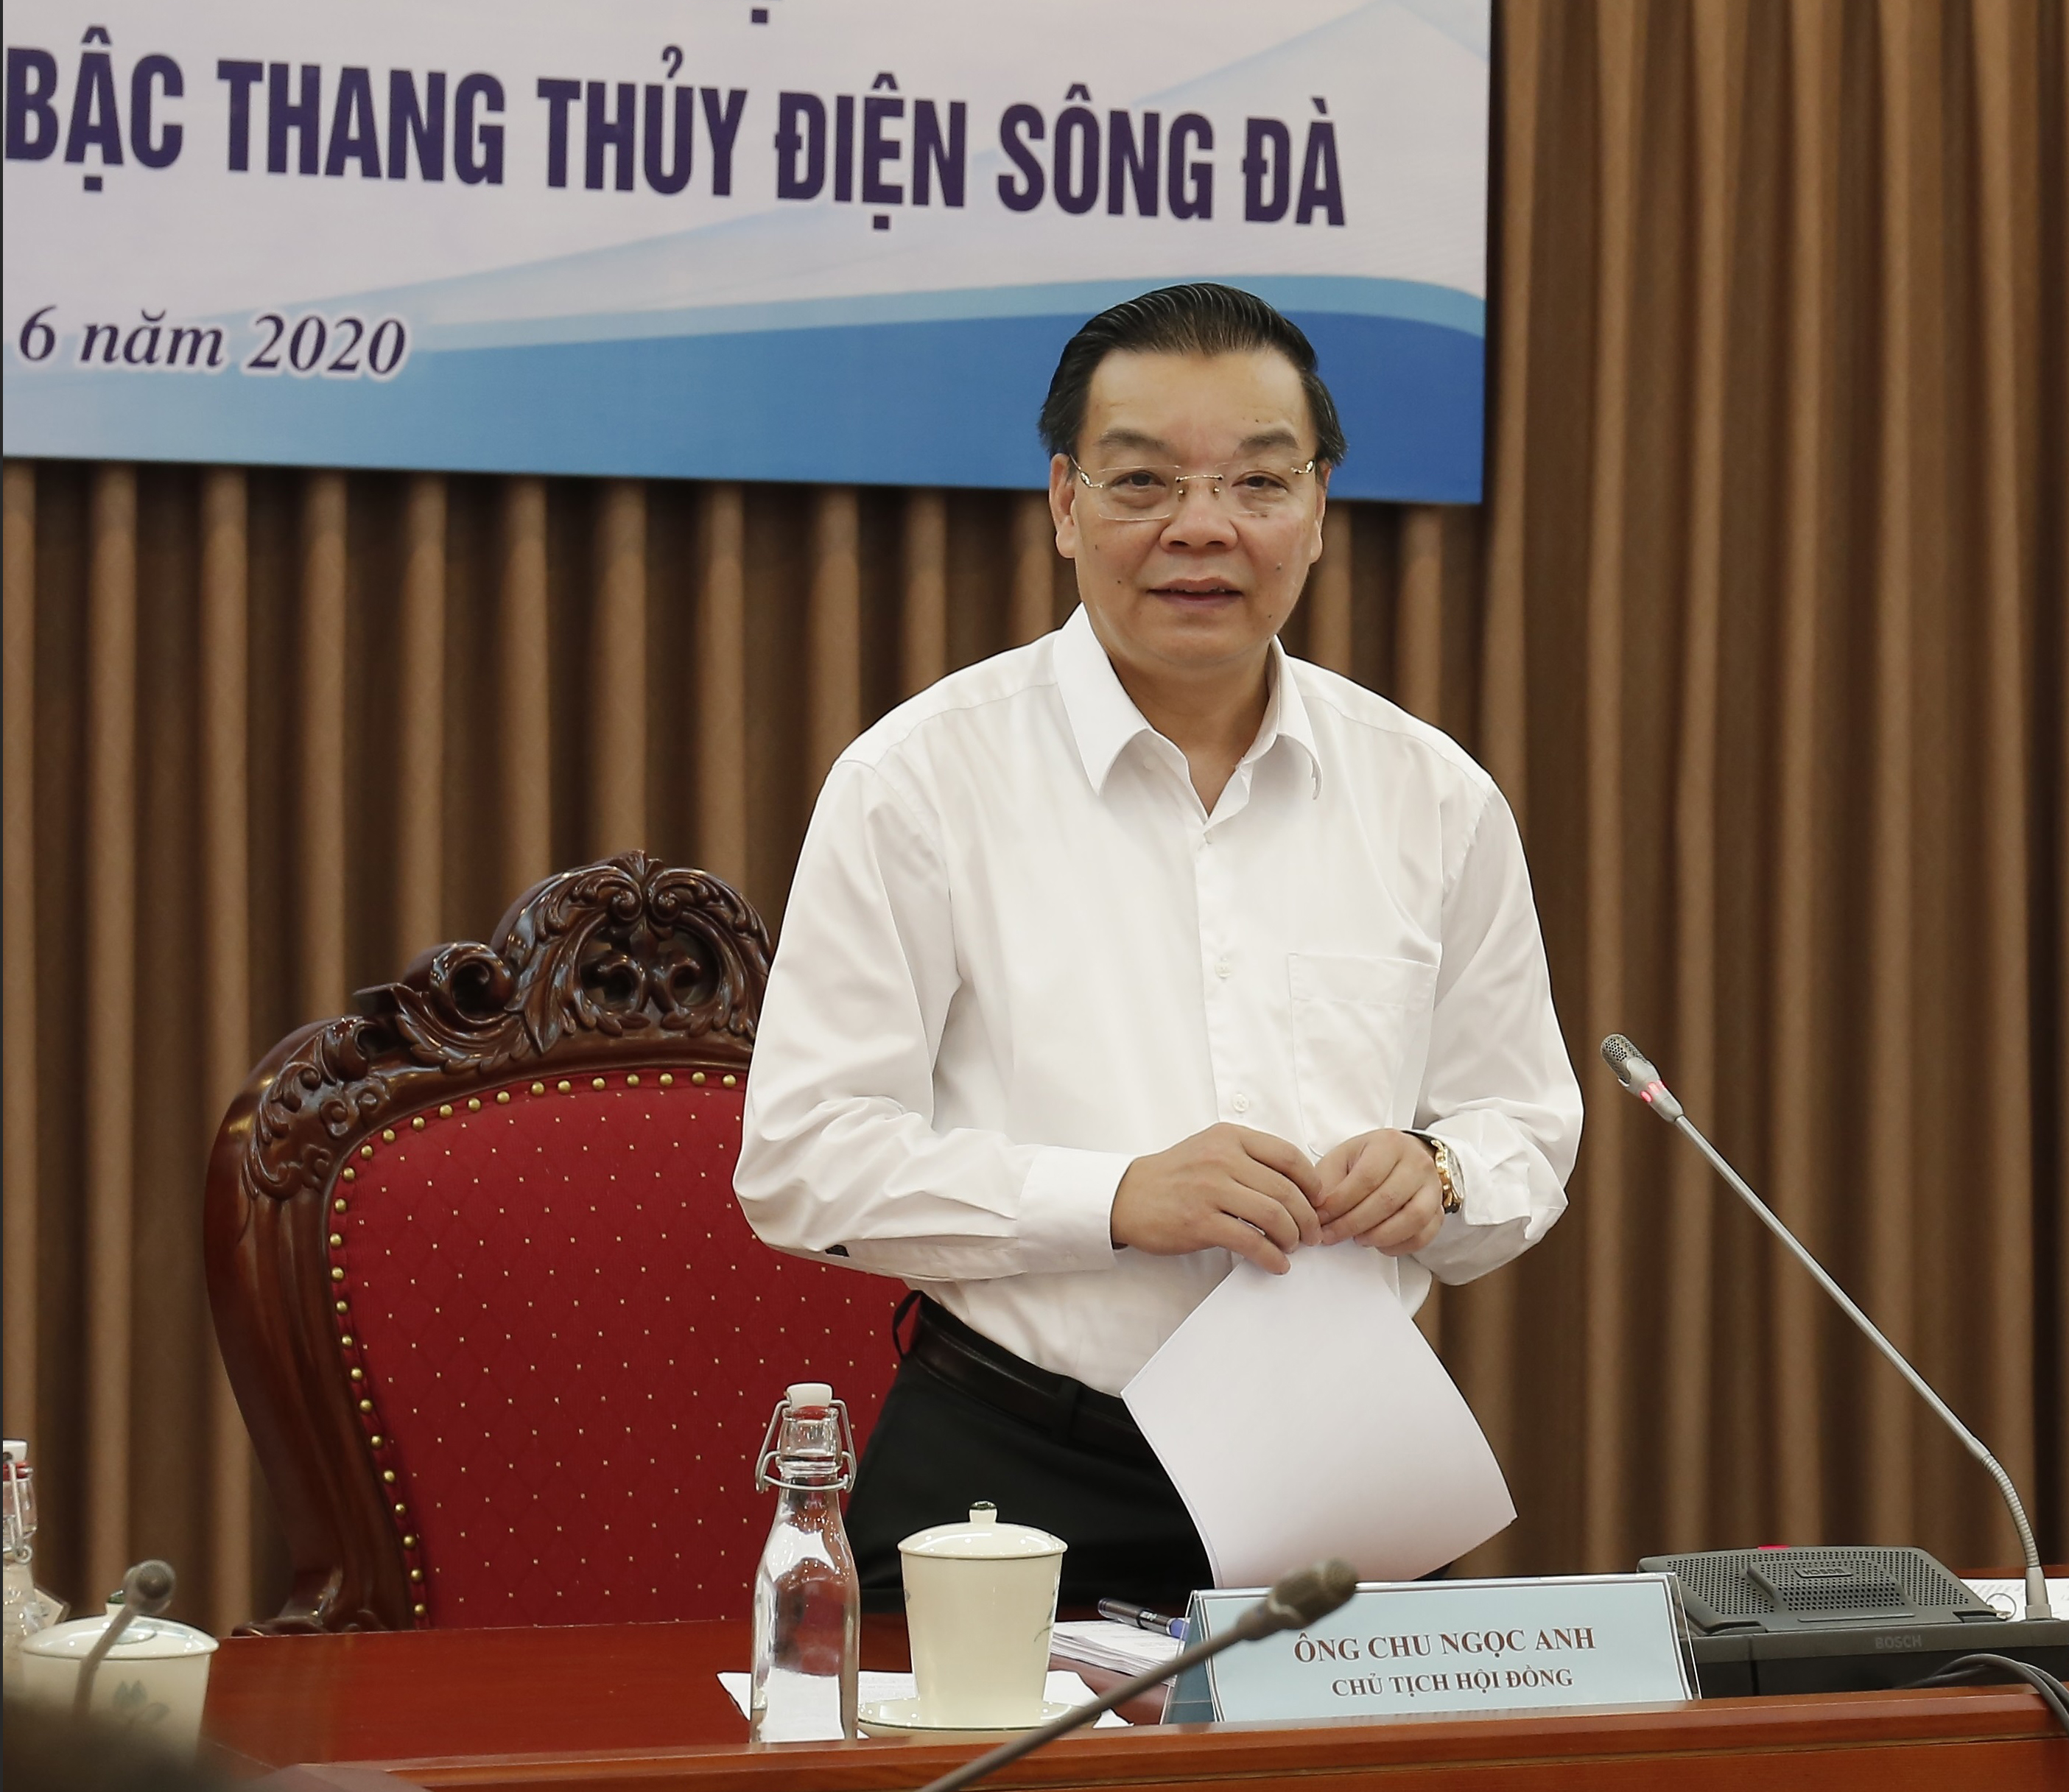 Bộ trưởng Bộ KH&CN Chu Ngọc Anh chủ trì phiên họp Hội đồng An toàn hệ thống thủy điện trên bậc thang thủy điện sông Đà 2020.